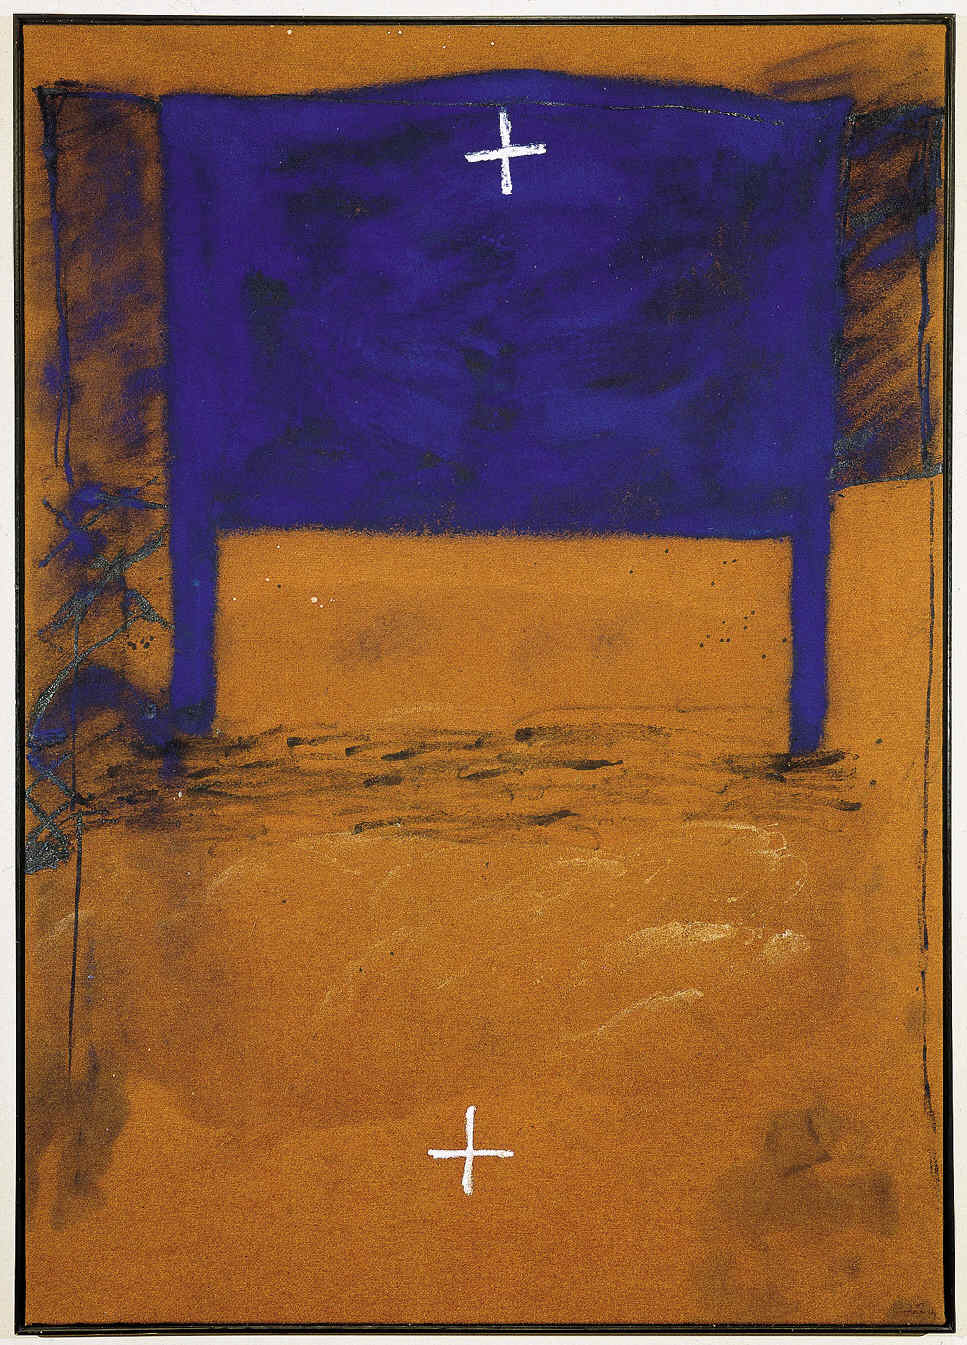 Blau i dues creus (1980).